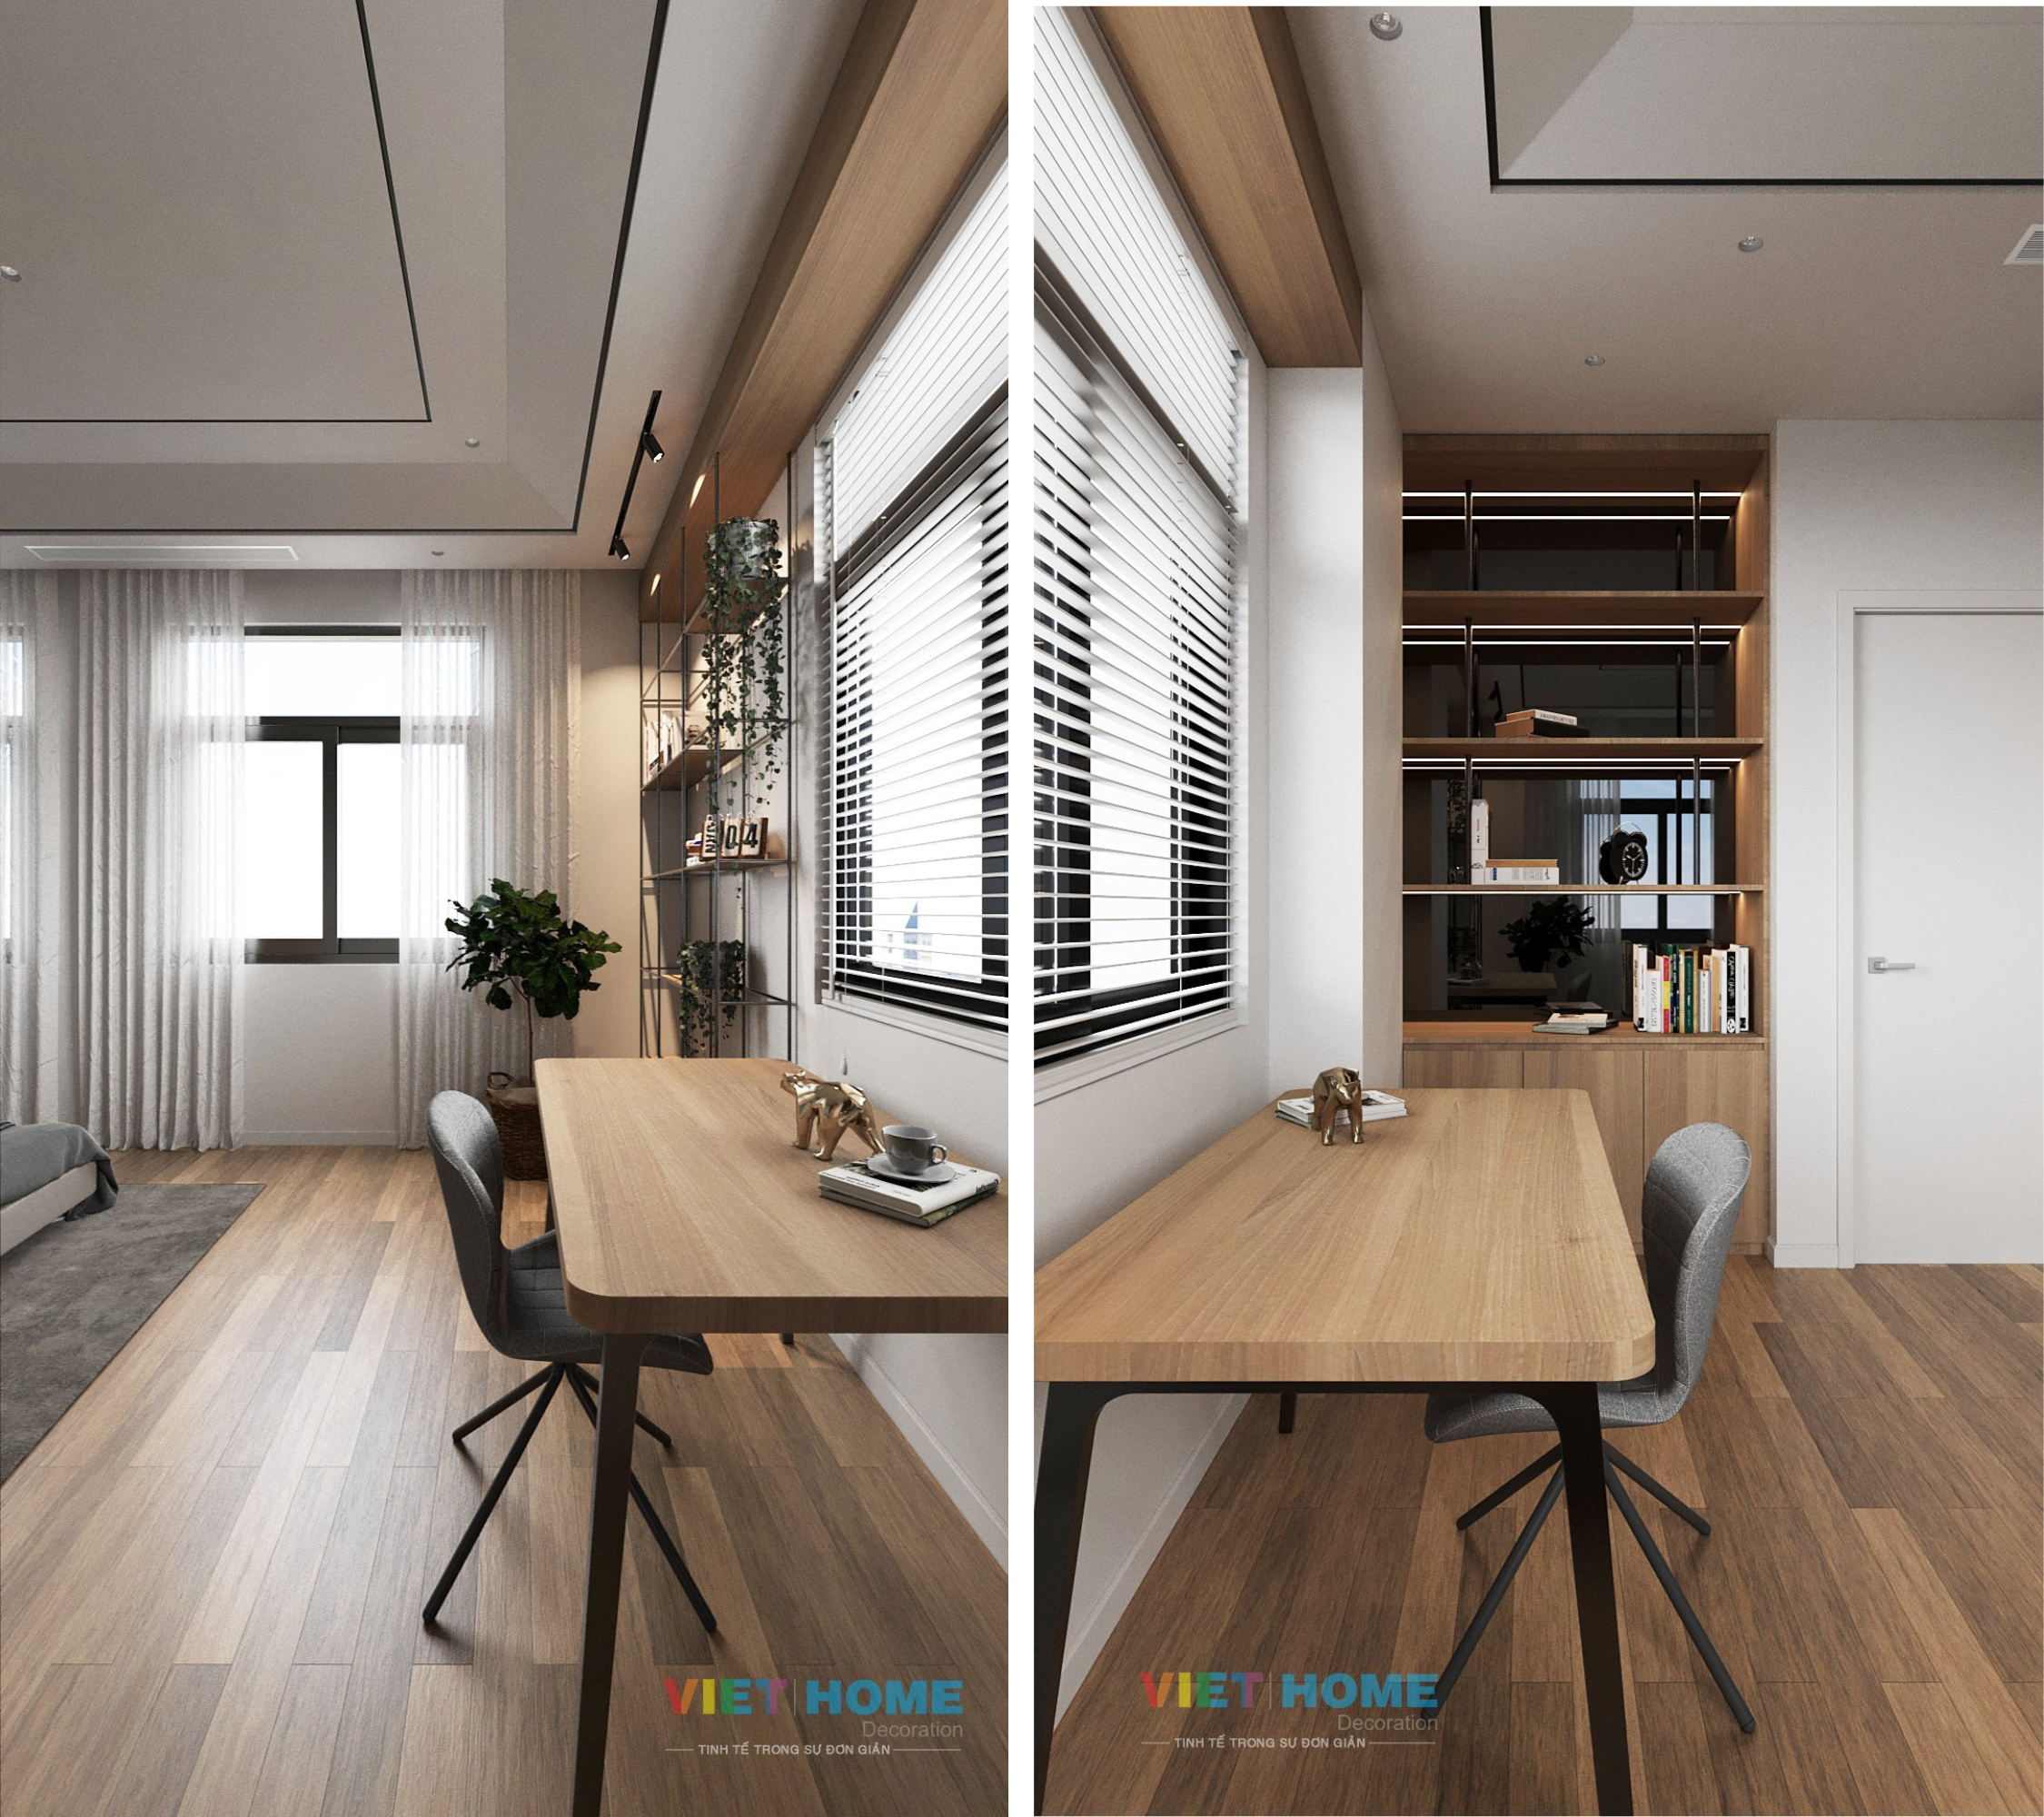 Chi tiết thiết kế nội thất phòng ngủ tầng 3 dự án La Vida Residences